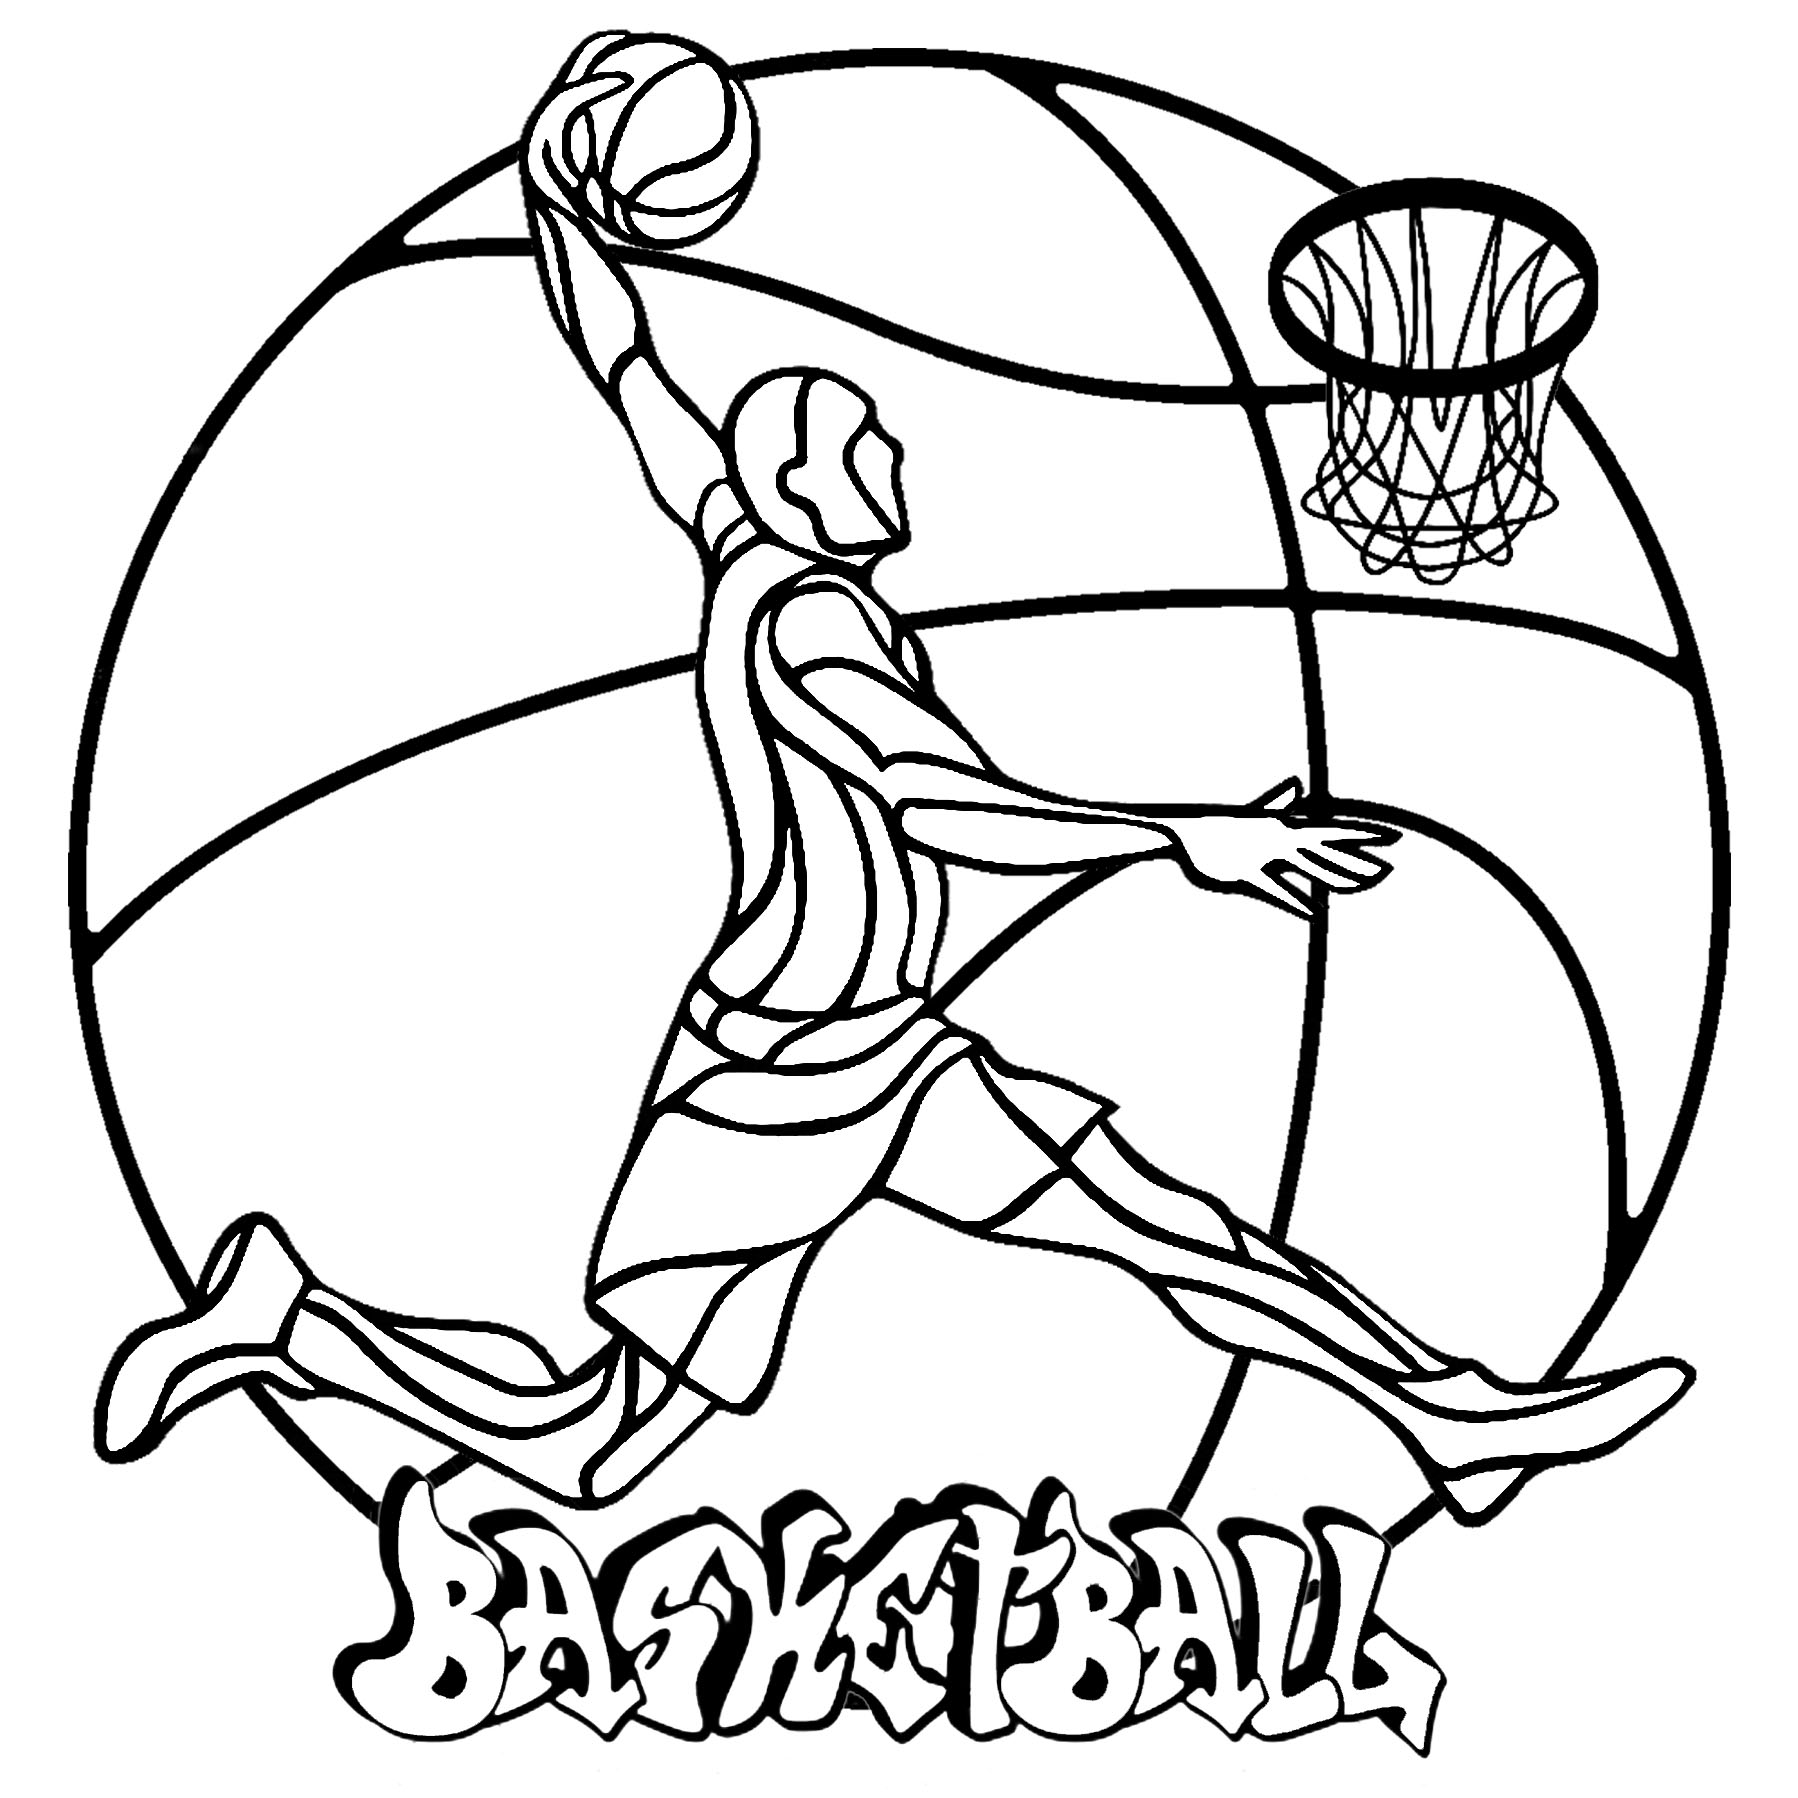 Ein einfaches Mandala zum Thema Basketball, mit einem Basketballspieler, einem Ball, einem Korb und dem Tag 'Basketball', Künstler : Art'Isabelle